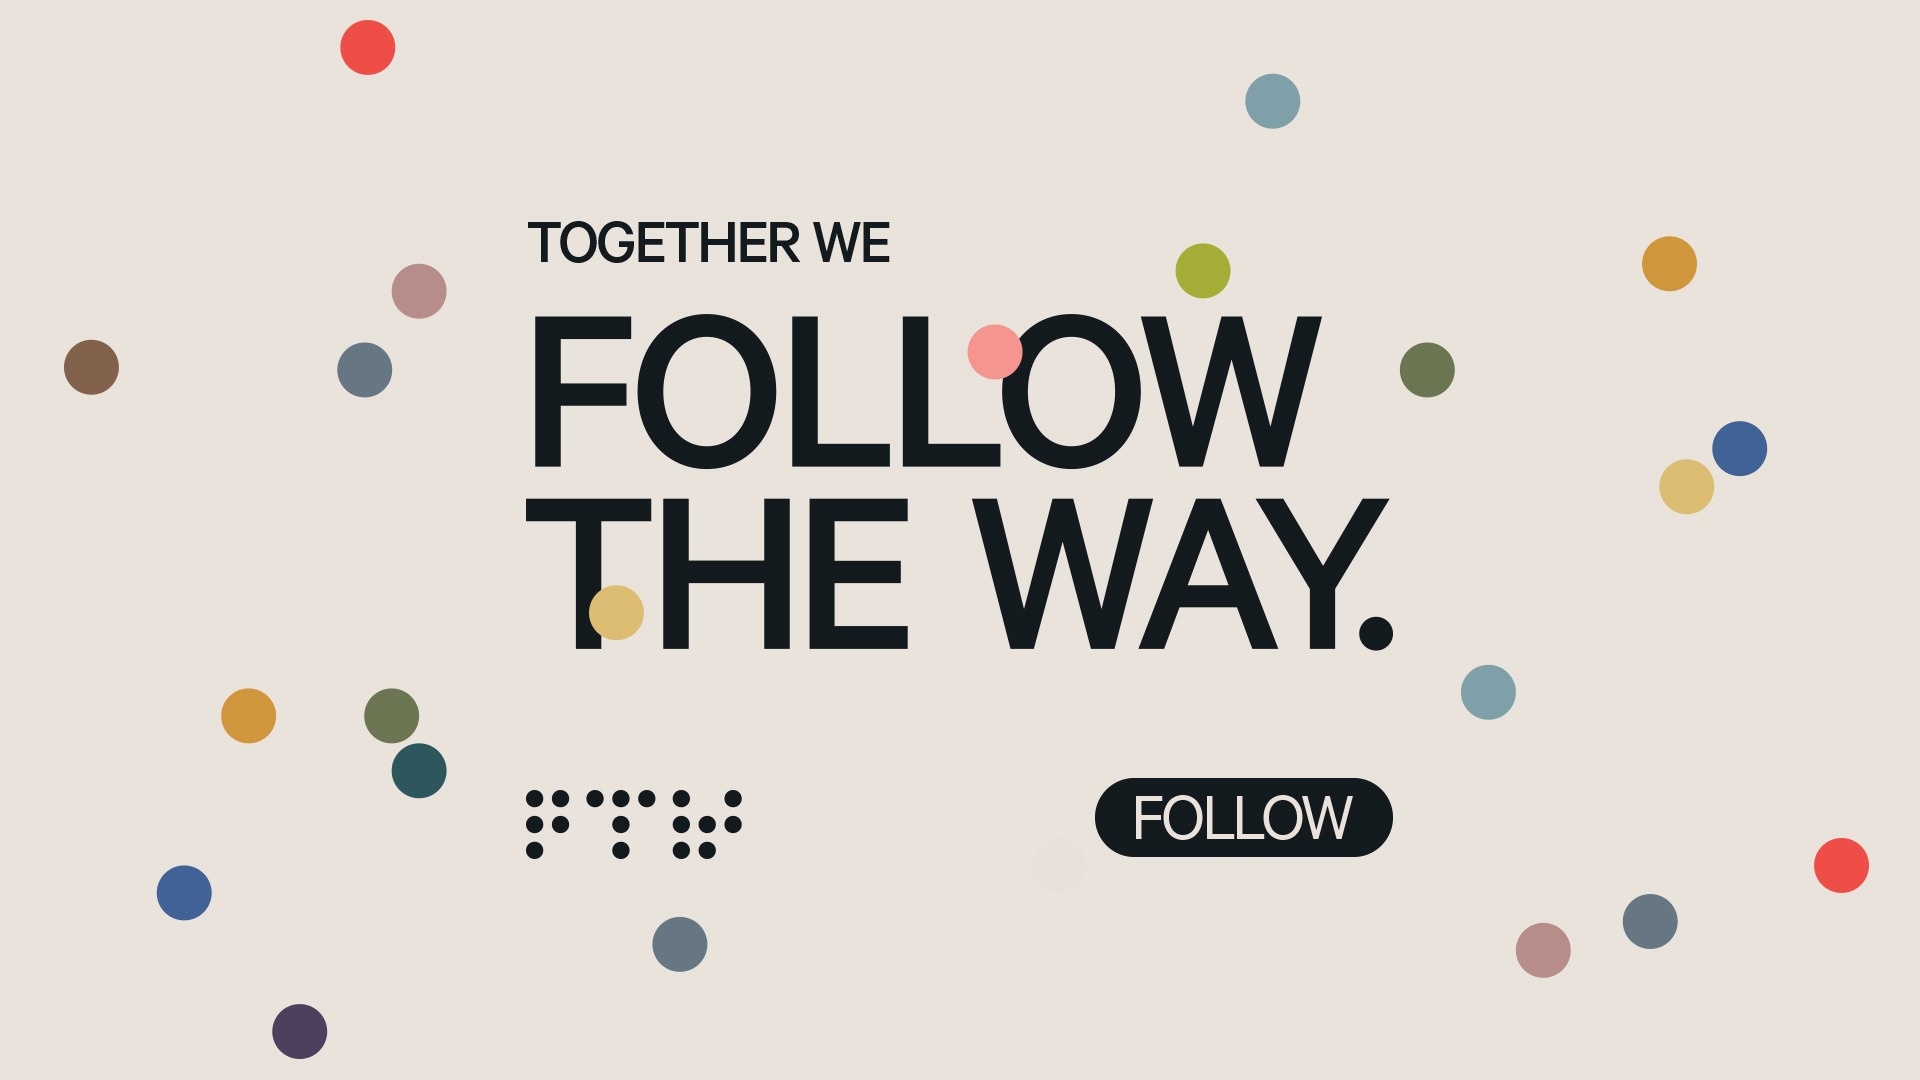 Follow The Way